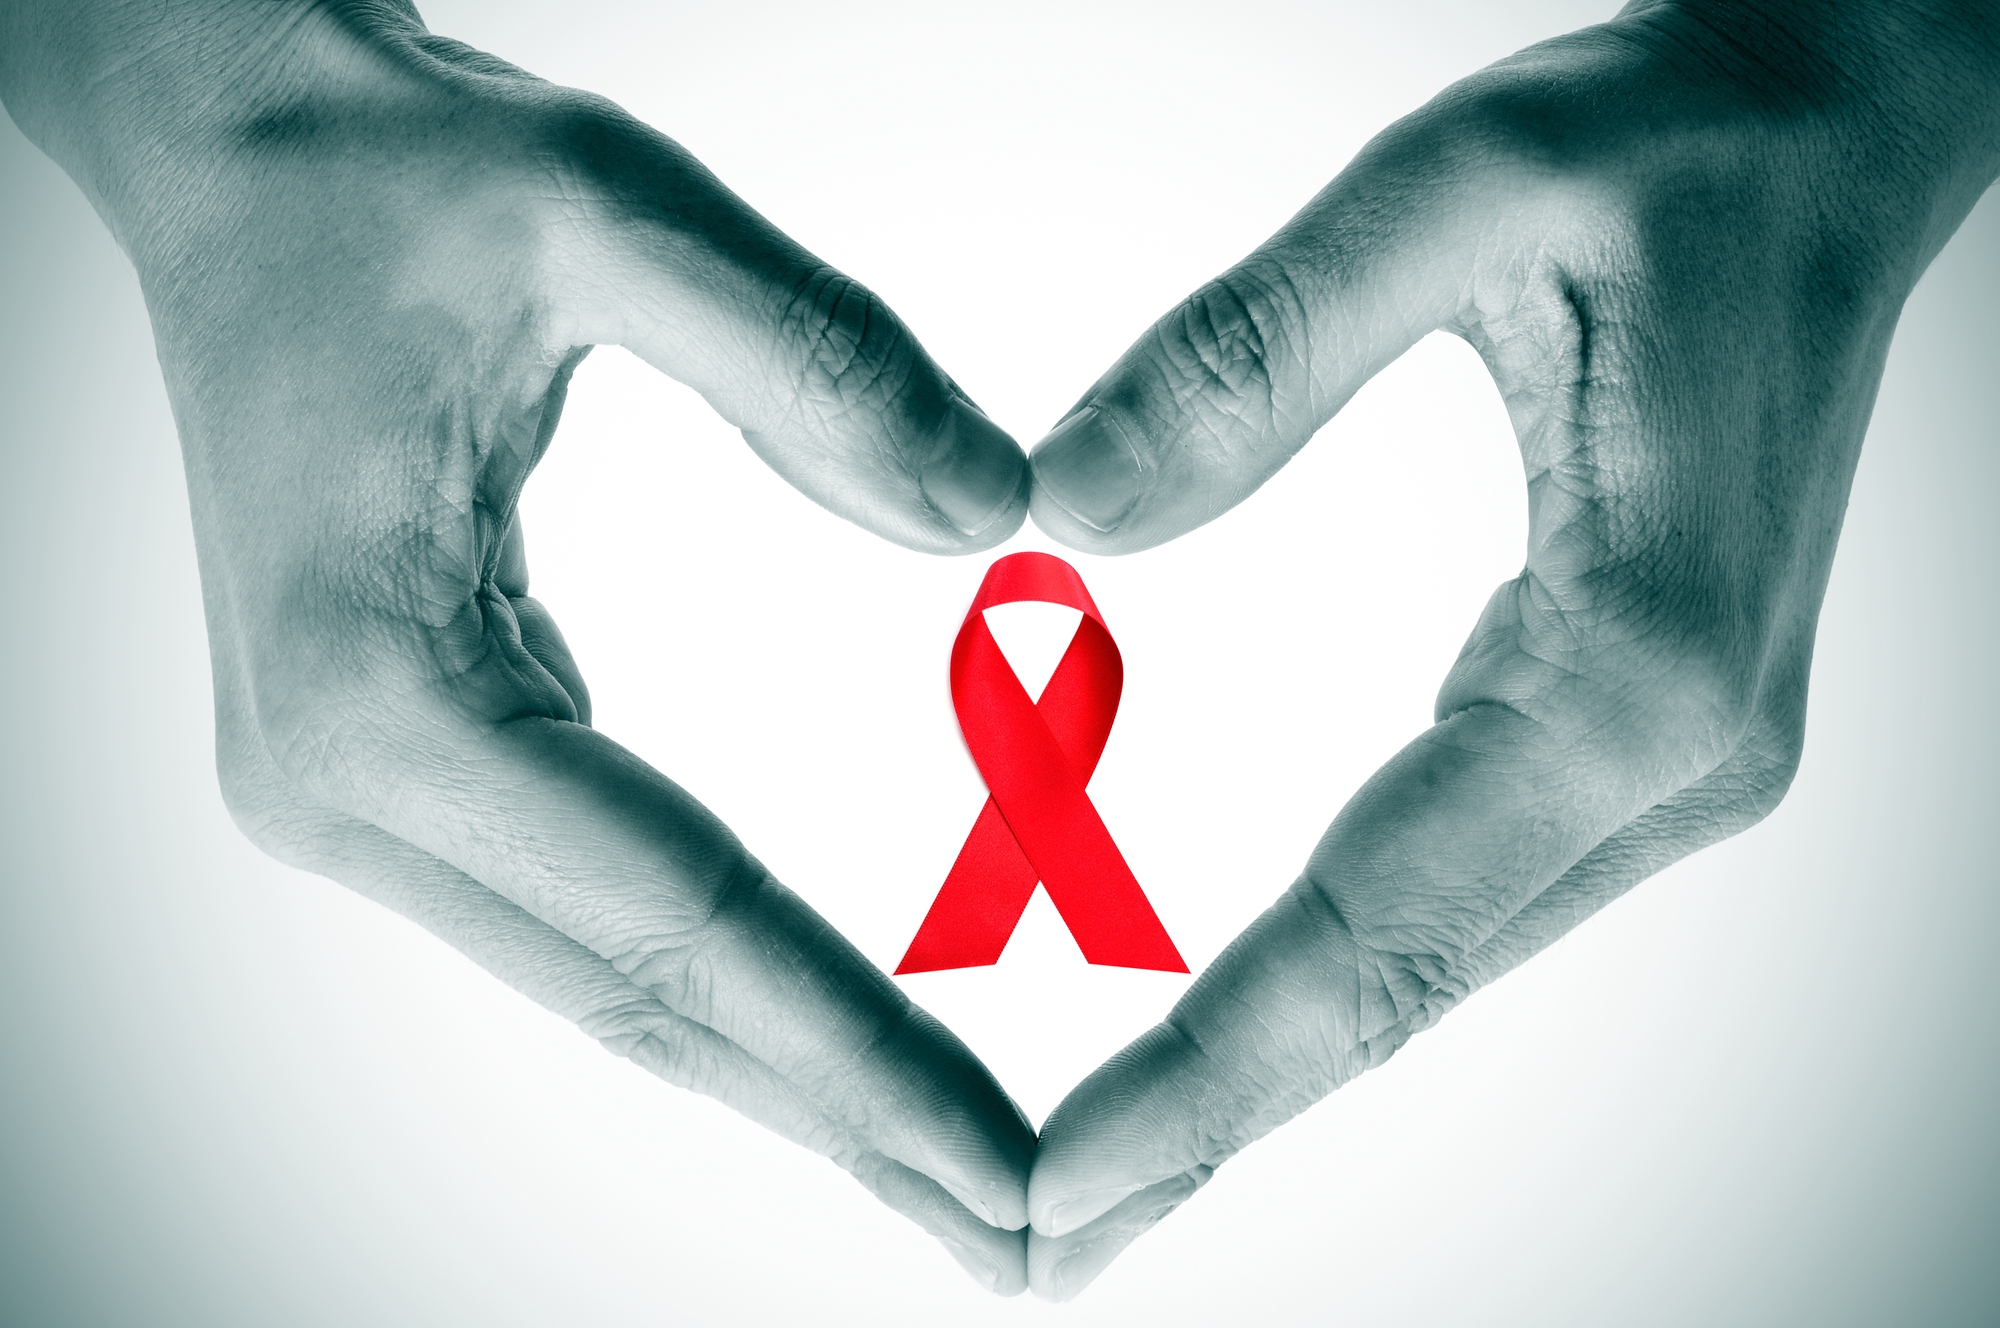 Vì sao vẫn tồn tại sự kỳ thị liên quan đến HIV/AIDS? - Ảnh 1.